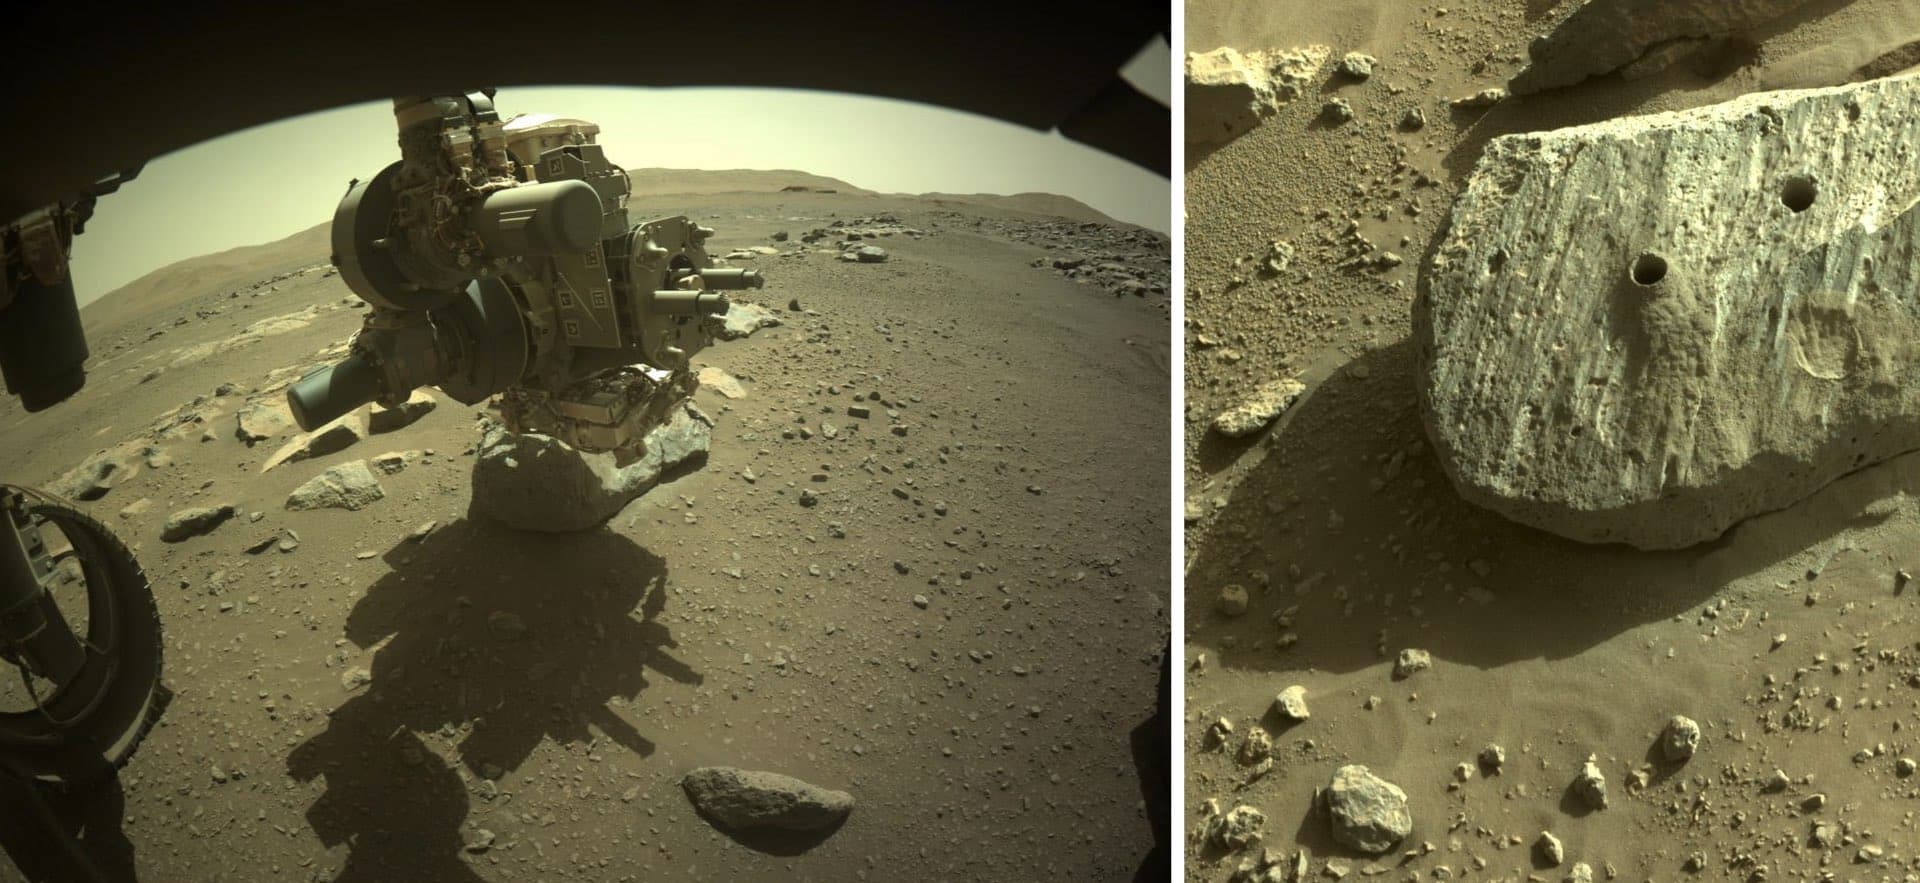 À gauche : la perceuse de Perseverance à l’œuvre sur Rochette. À droite : les deux trous de 2,7 cm de large et 7 cm de profondeur laissés par les opérations de forage de début septembre 2021. Crédit : NASA/JPL/Caltech/MSSS-Cité de l’espace